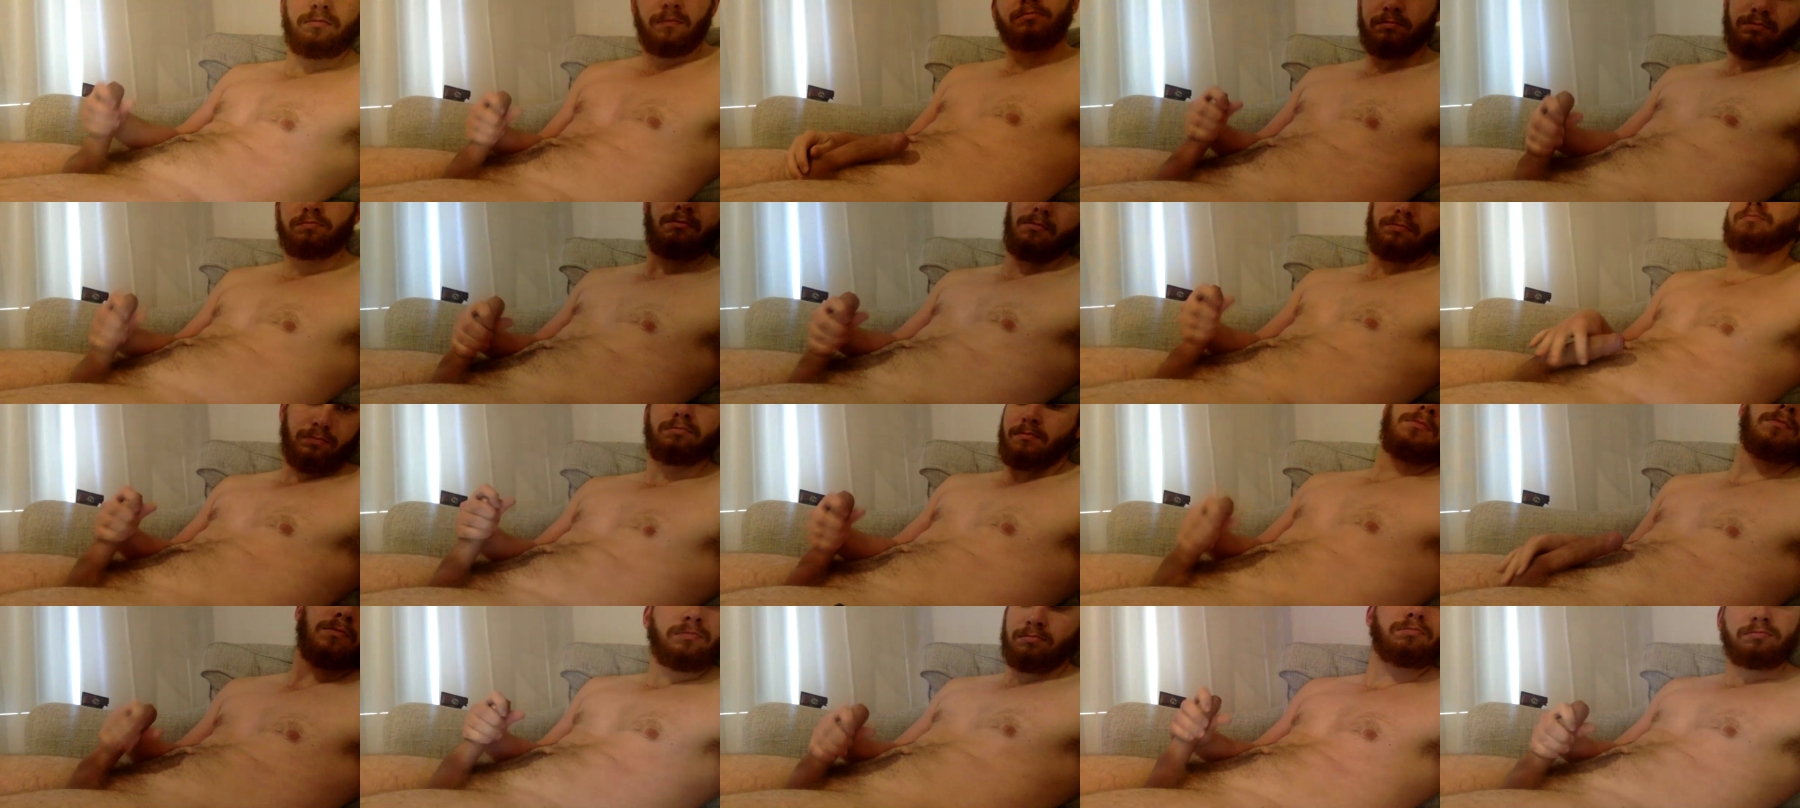 Perth_200_Stud  17-07-2021 Male Topless